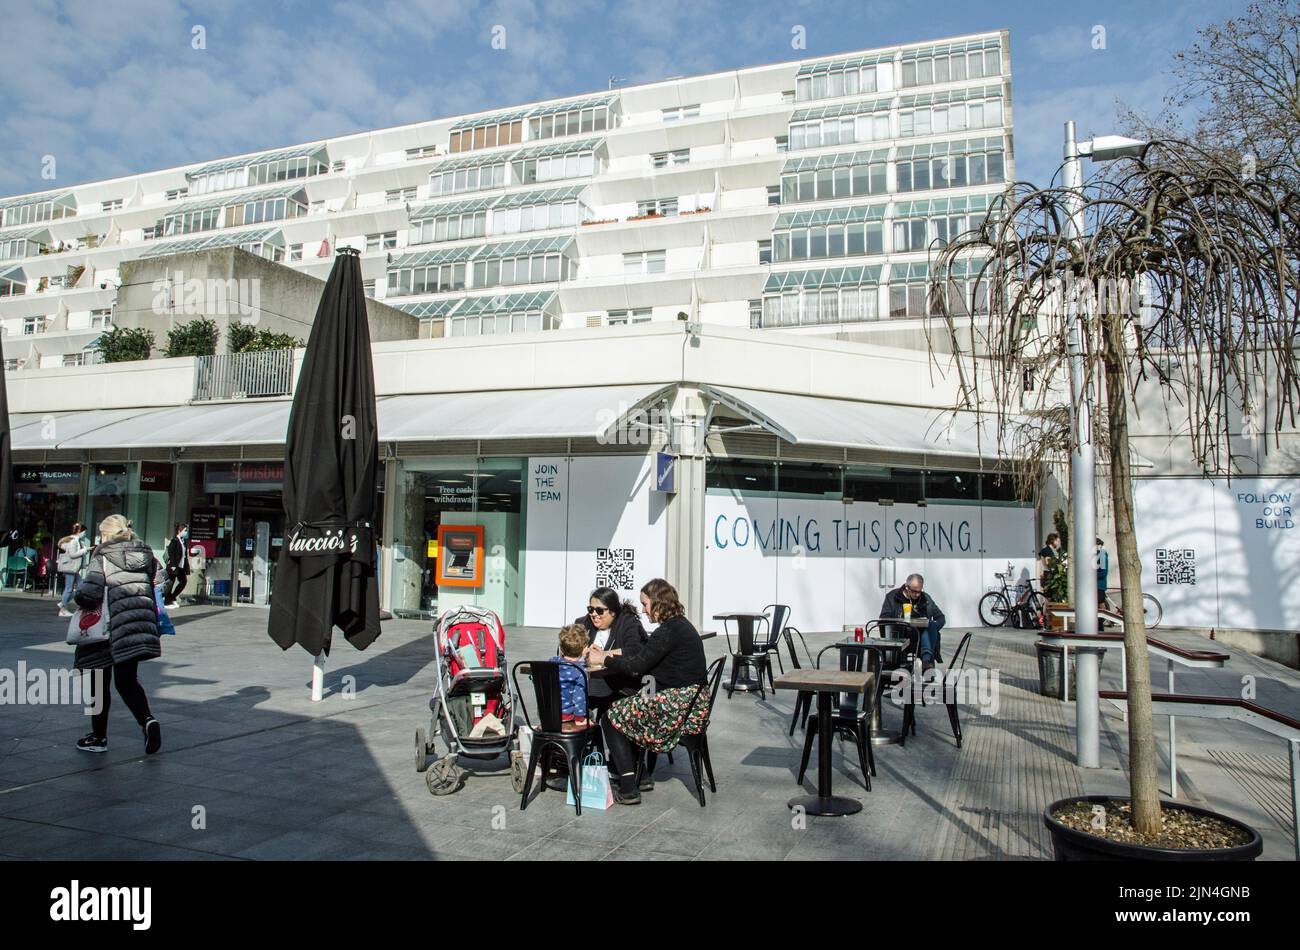 Londra, Regno Unito - 21 marzo 2022: Gli amanti dello shopping si godono il sole ai tavoli da caffè allestiti nel Brunswick Centre di Bloomsbury, nel centro di Londra. Il brutale Foto Stock